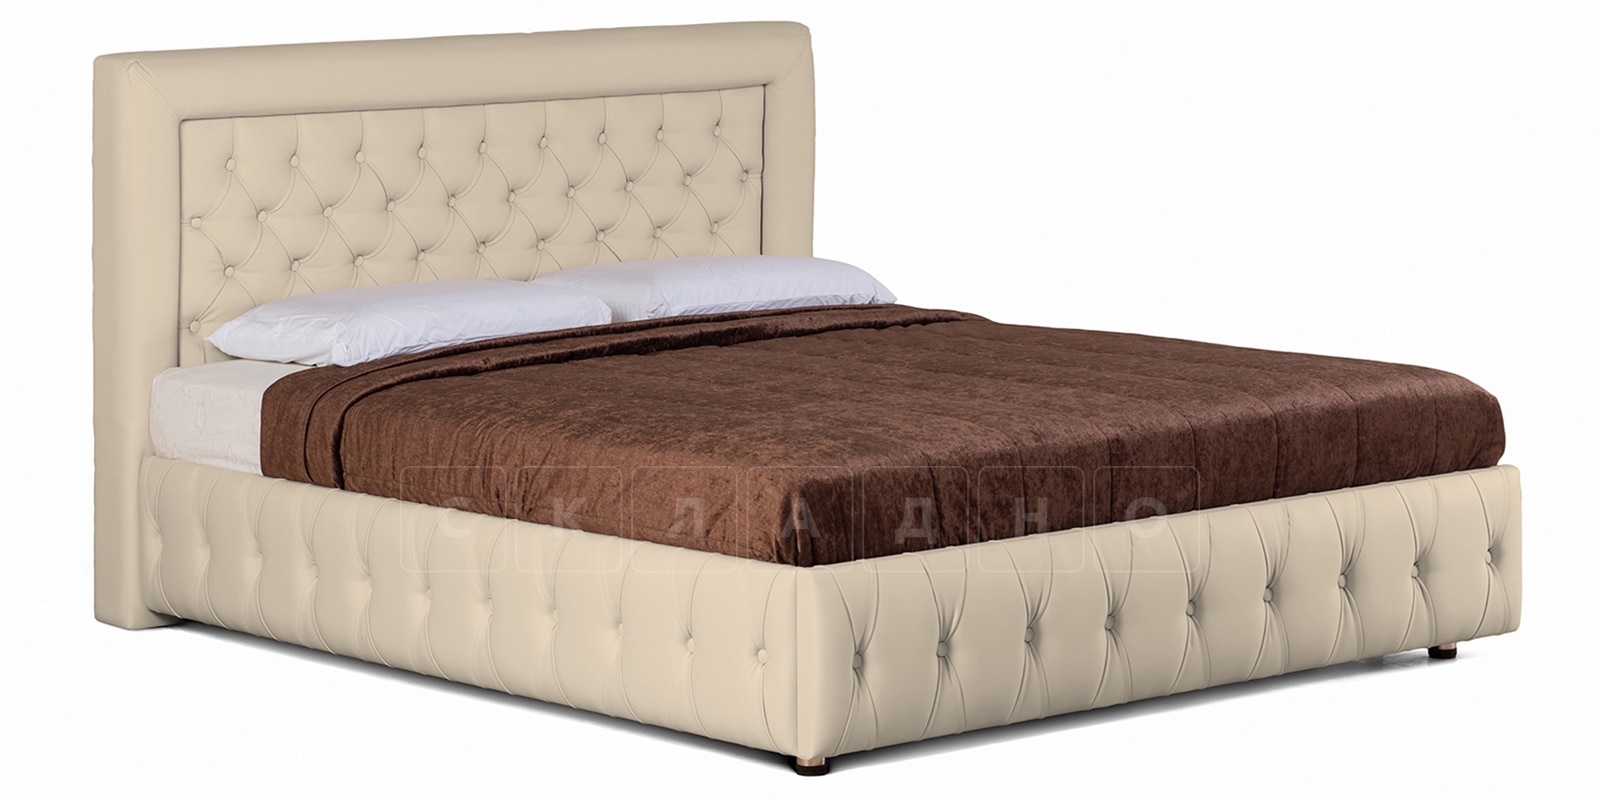 Мягкая кровать Малибу 160 см экокожа бежевый вариант 7-2 фото 1 | интернет-магазин Складно